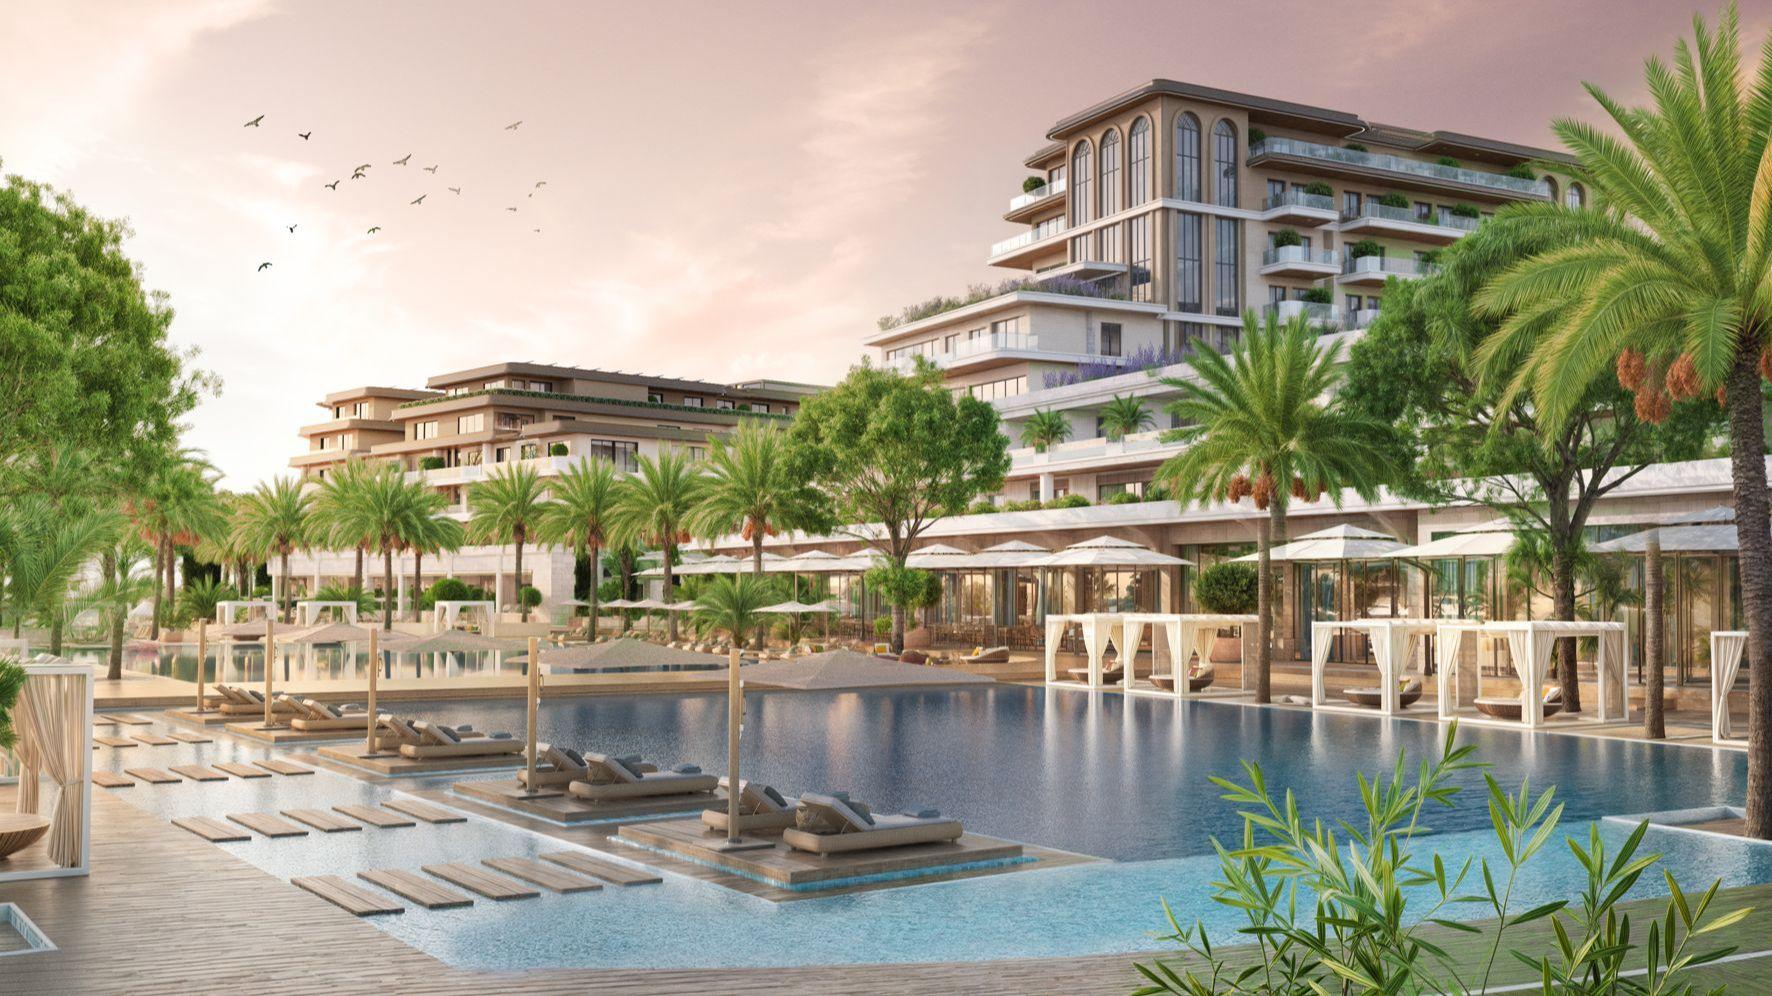 “VRATA RAJA” OD 160 MILIONA EURA: Novi luksuzni hotelsko-rezidencijalni kompleks niče na najljepšoj plaži Jadranskog primorja u Ulcinju